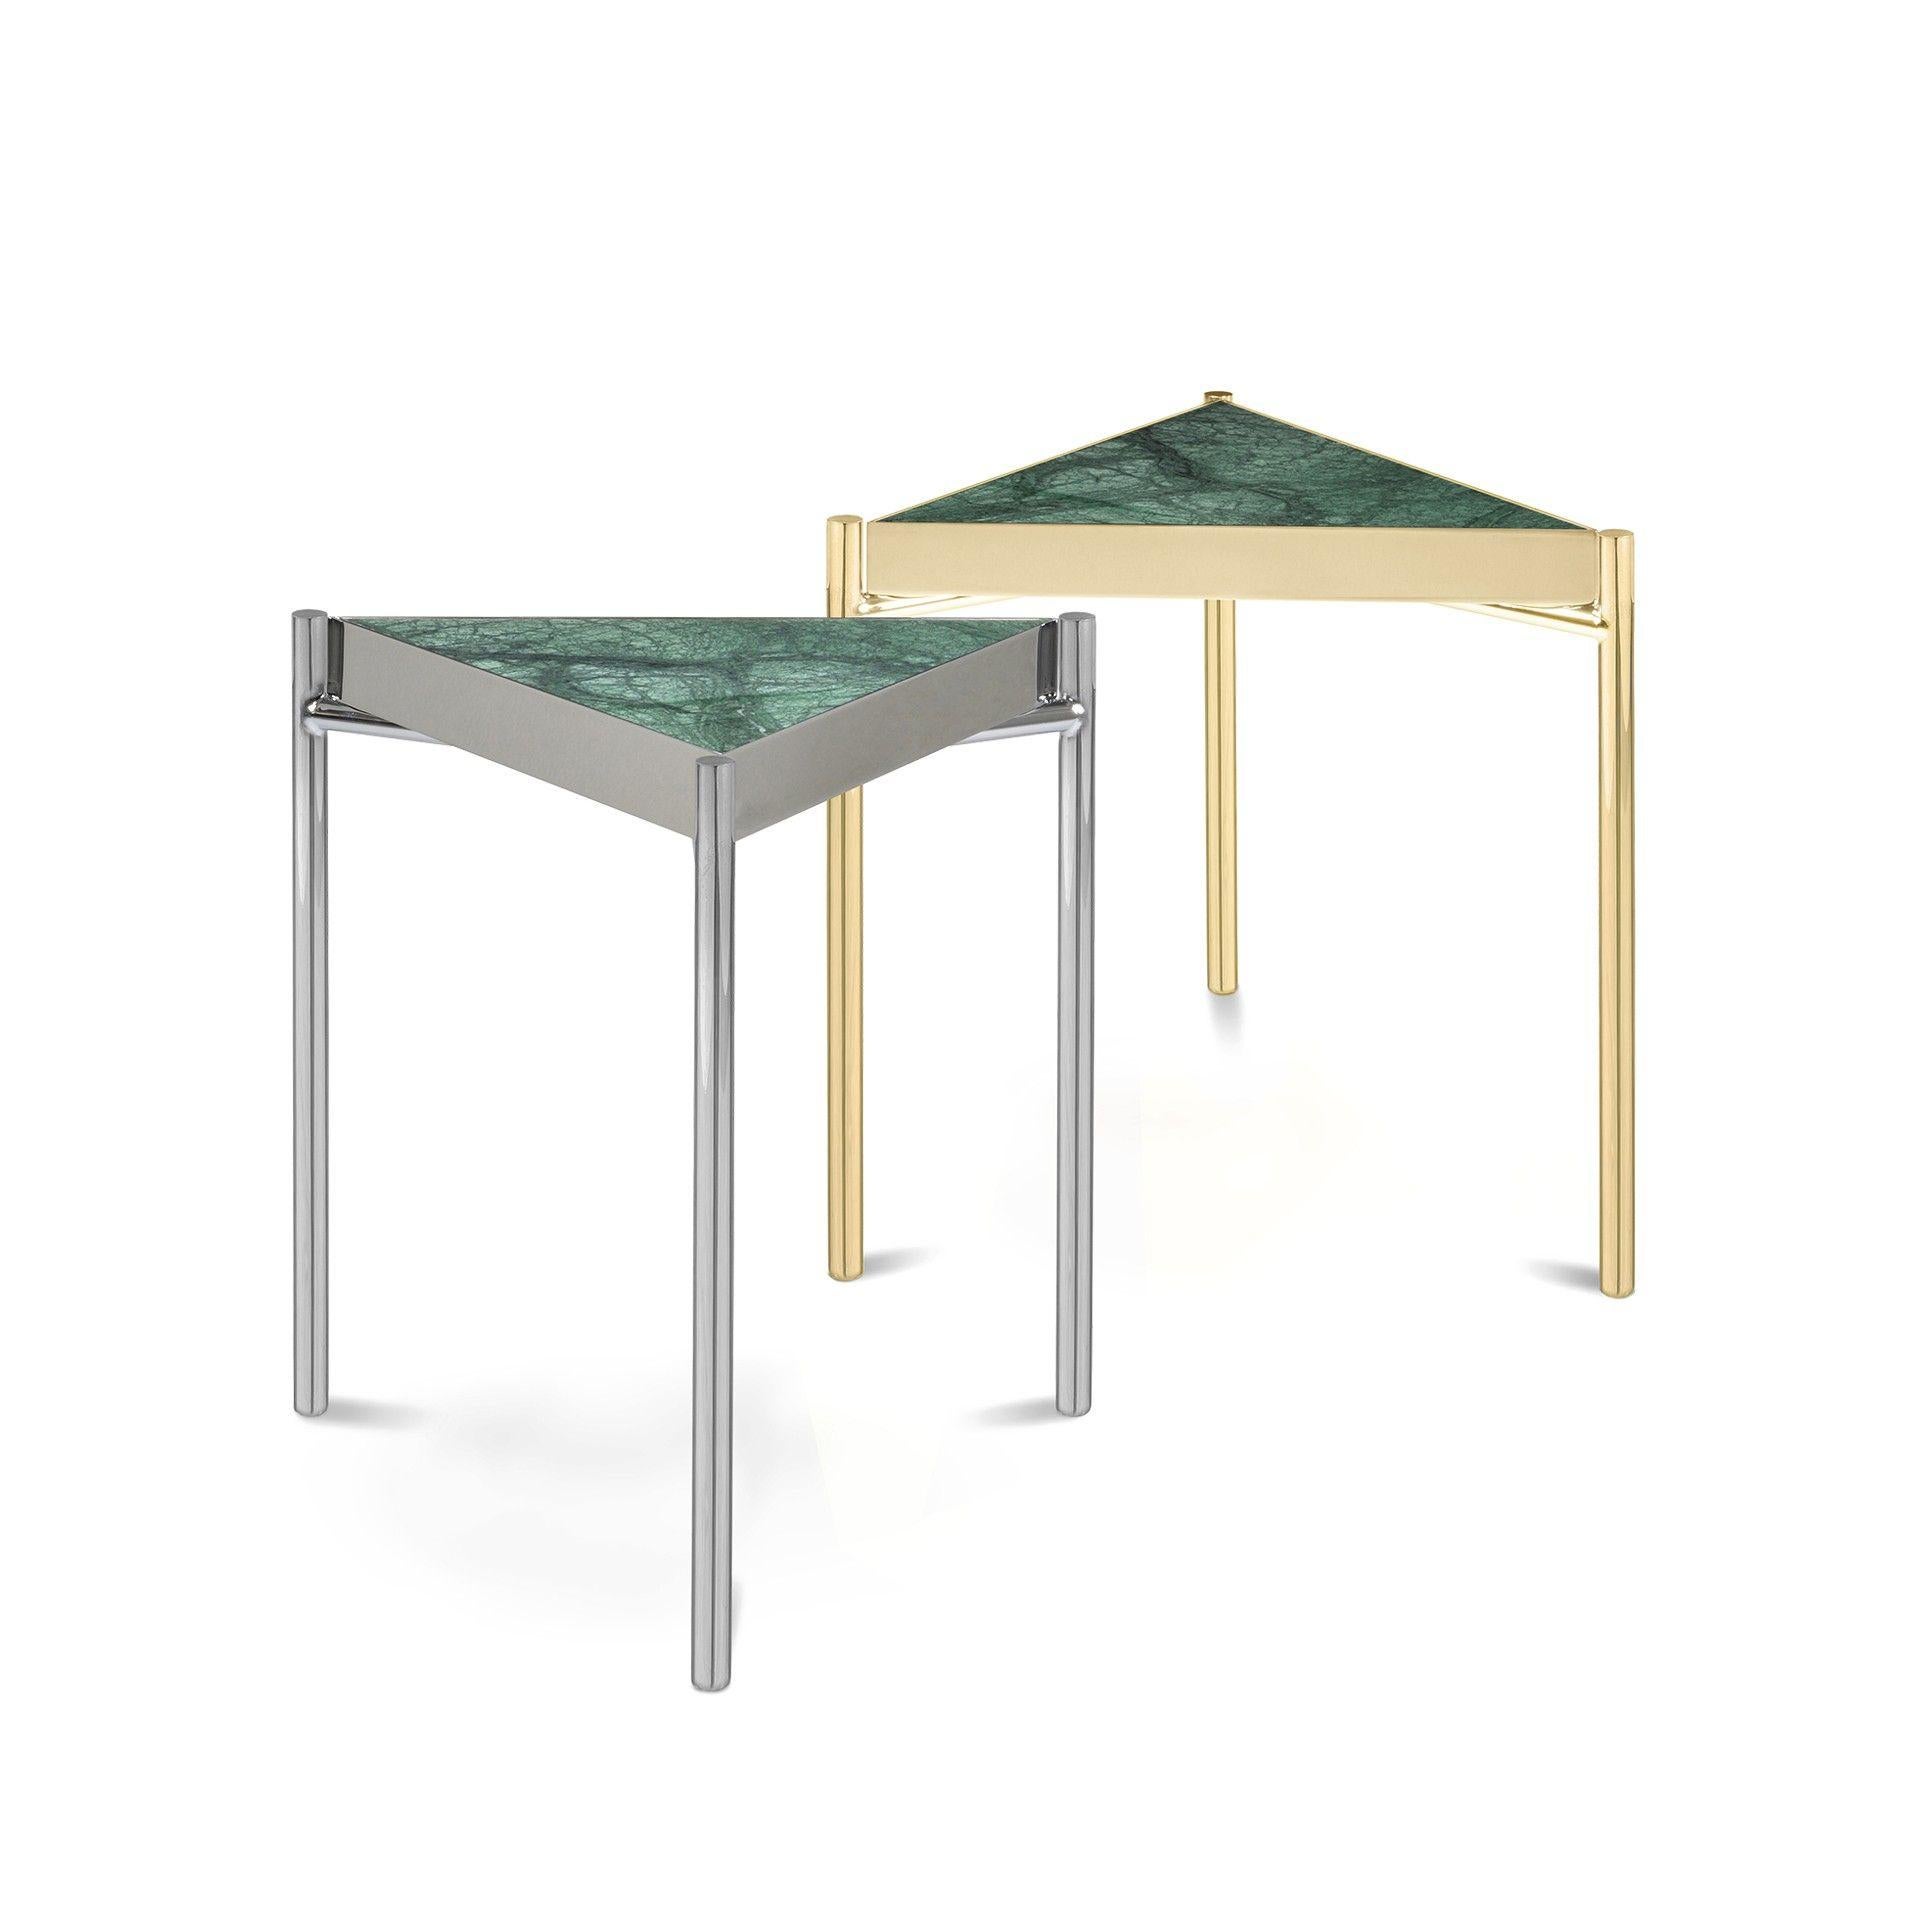 Diese einfache, elegante,  Der geometrisch geformte Tisch ist von der Arbeit des Künstlers Kandinsky inspiriert. 
Platte aus indischem grünem Marmor und Sockel aus dünnem Titanium Gold.
Es sieht aus, als würde die Tischplatte schweben, denn die